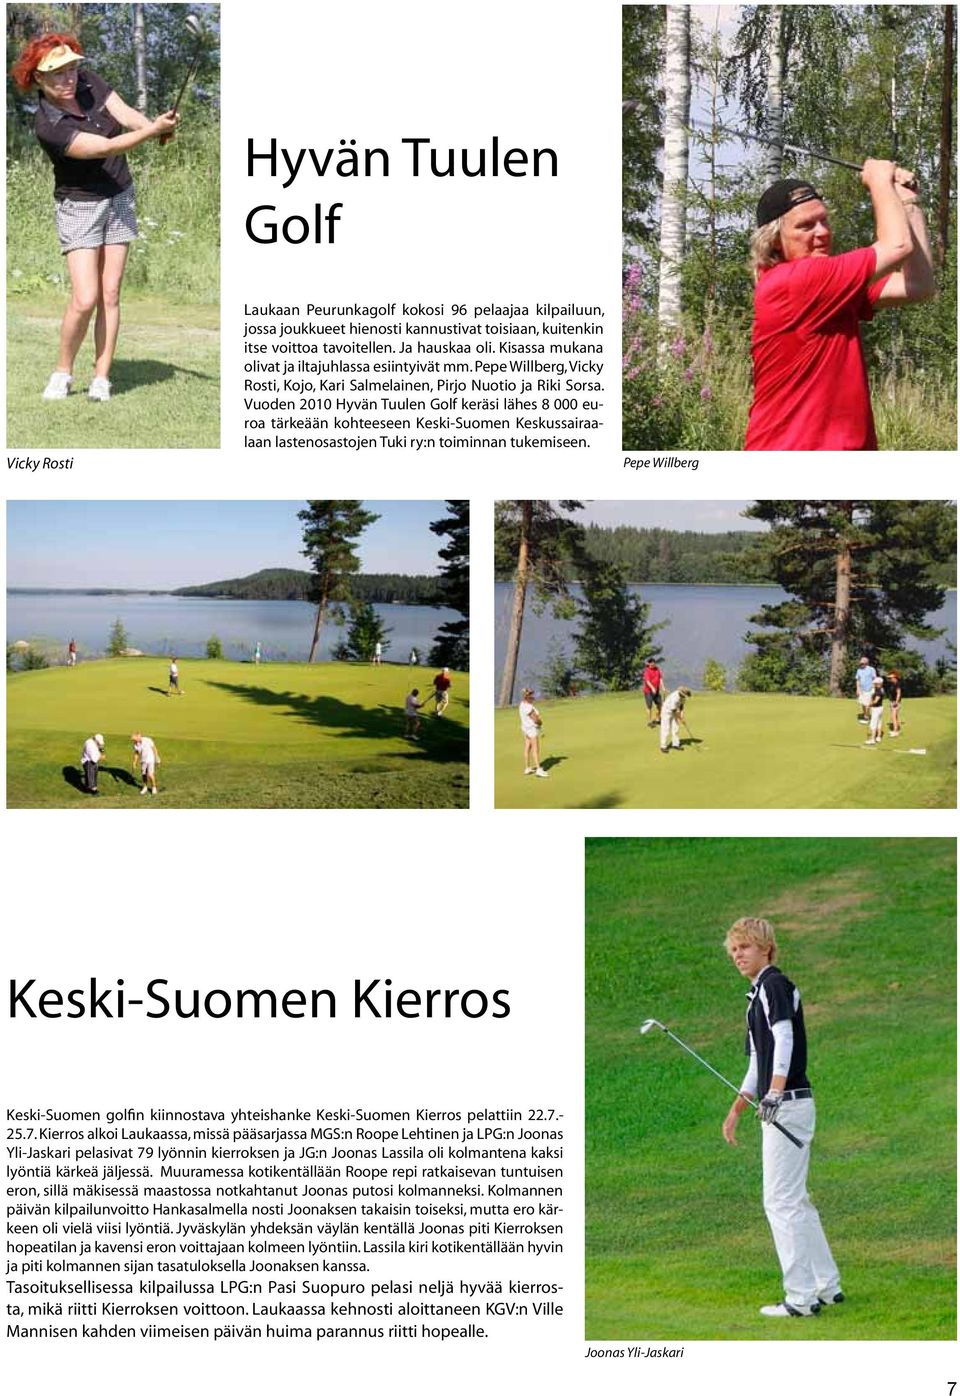 Vuoden 2010 Hyvän Tuulen Golf keräsi lähes 8 000 euroa tärkeään kohteeseen Keski-Suomen Keskussairaalaan lastenosastojen Tuki ry:n toiminnan tukemiseen.